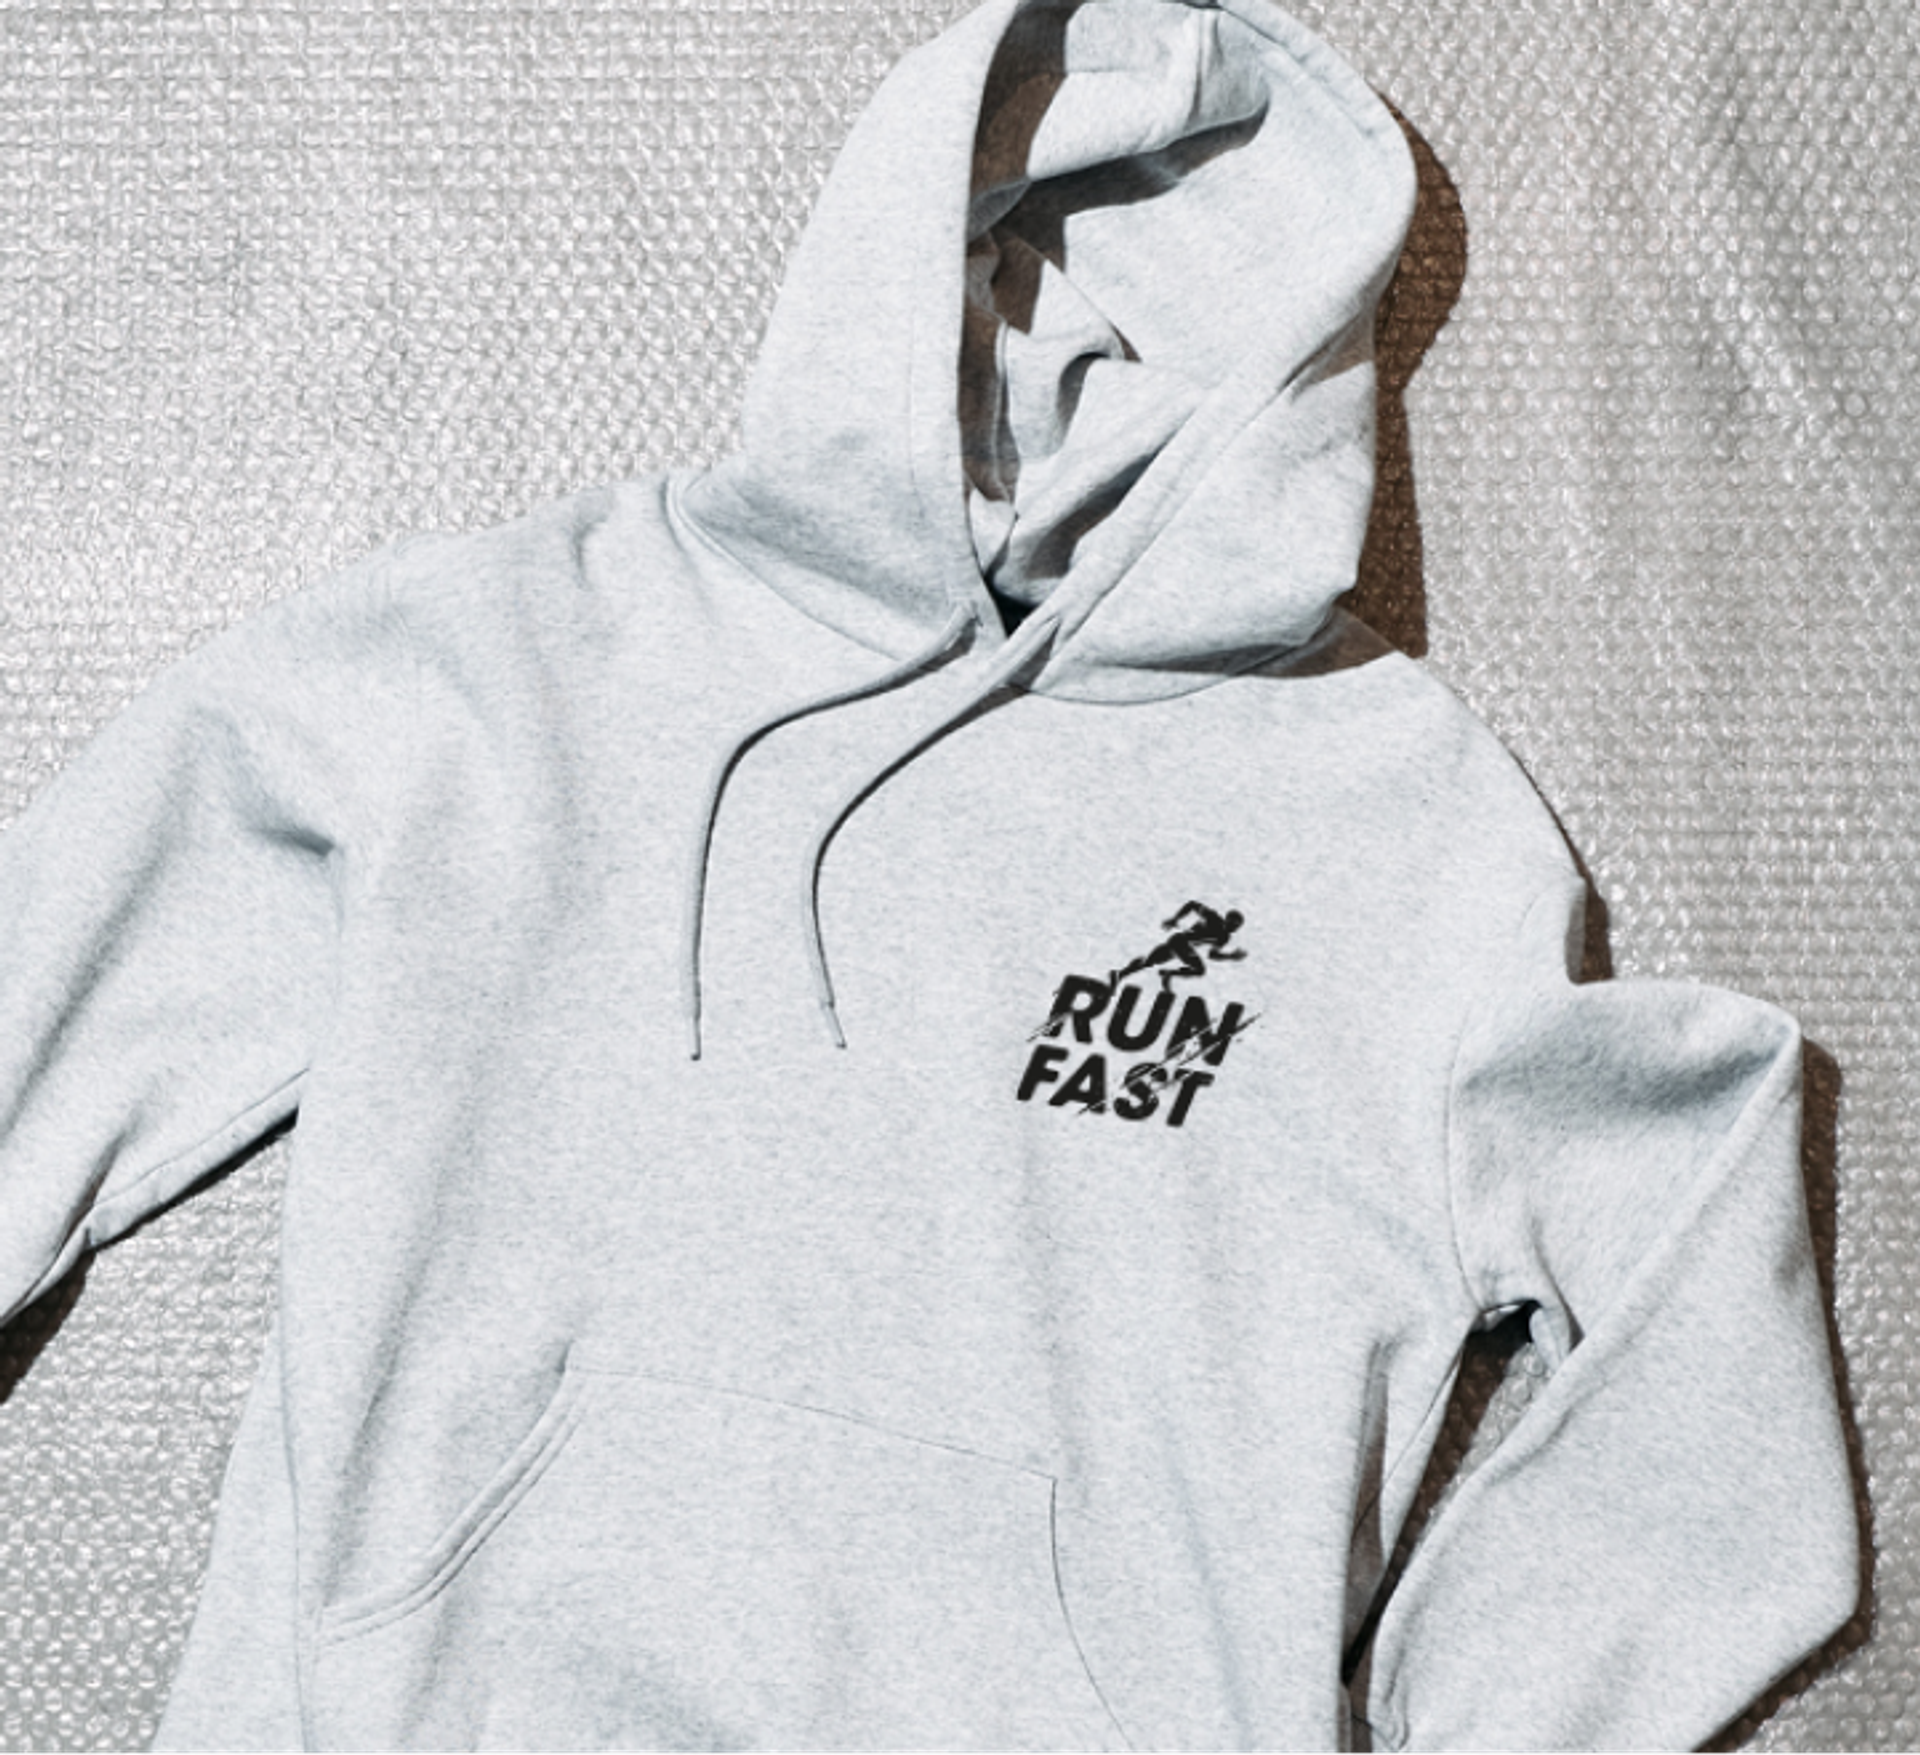 A CReator Studio custom printed hoodie